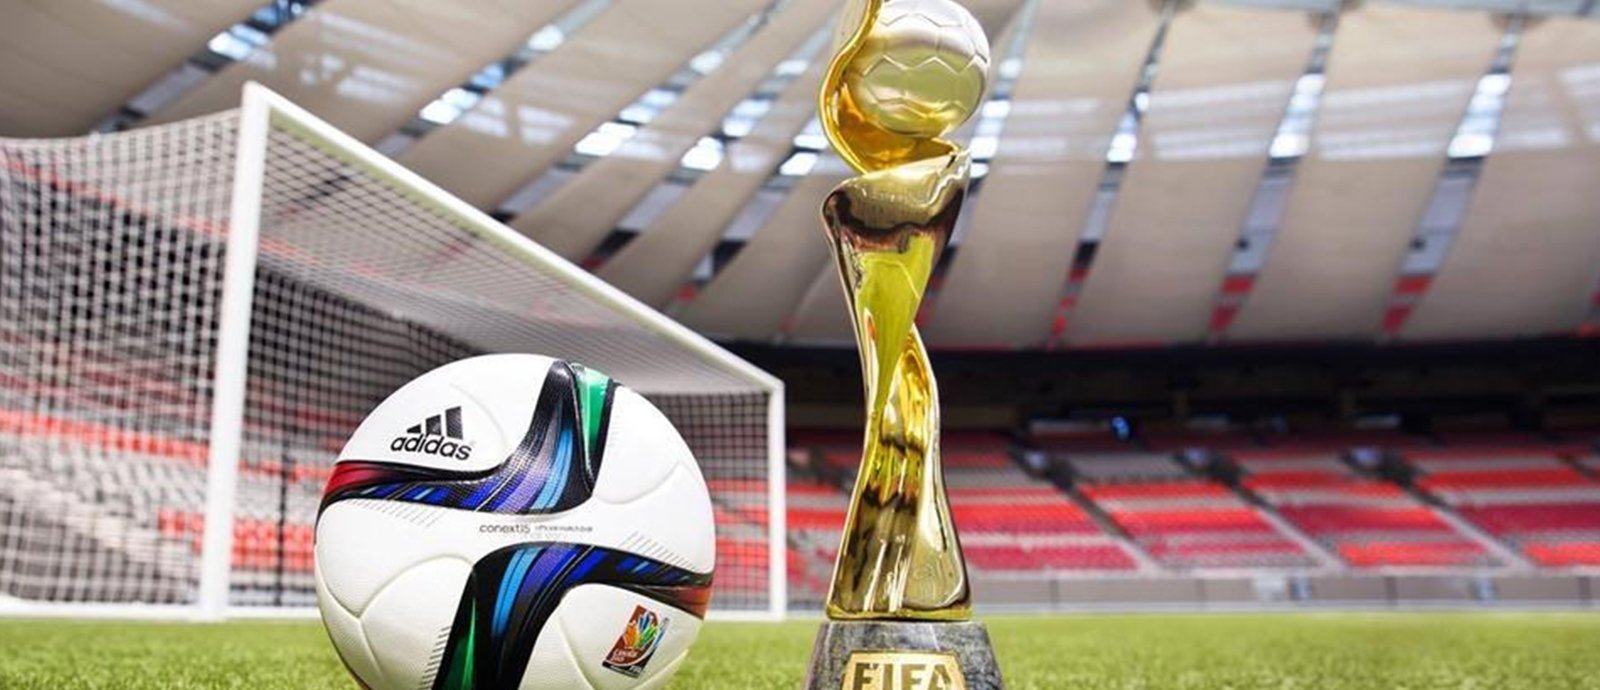 حزمة إجراءات جديدة لتسهيل الحضور الجماهيري لبطولة كأس العالم للسيدات